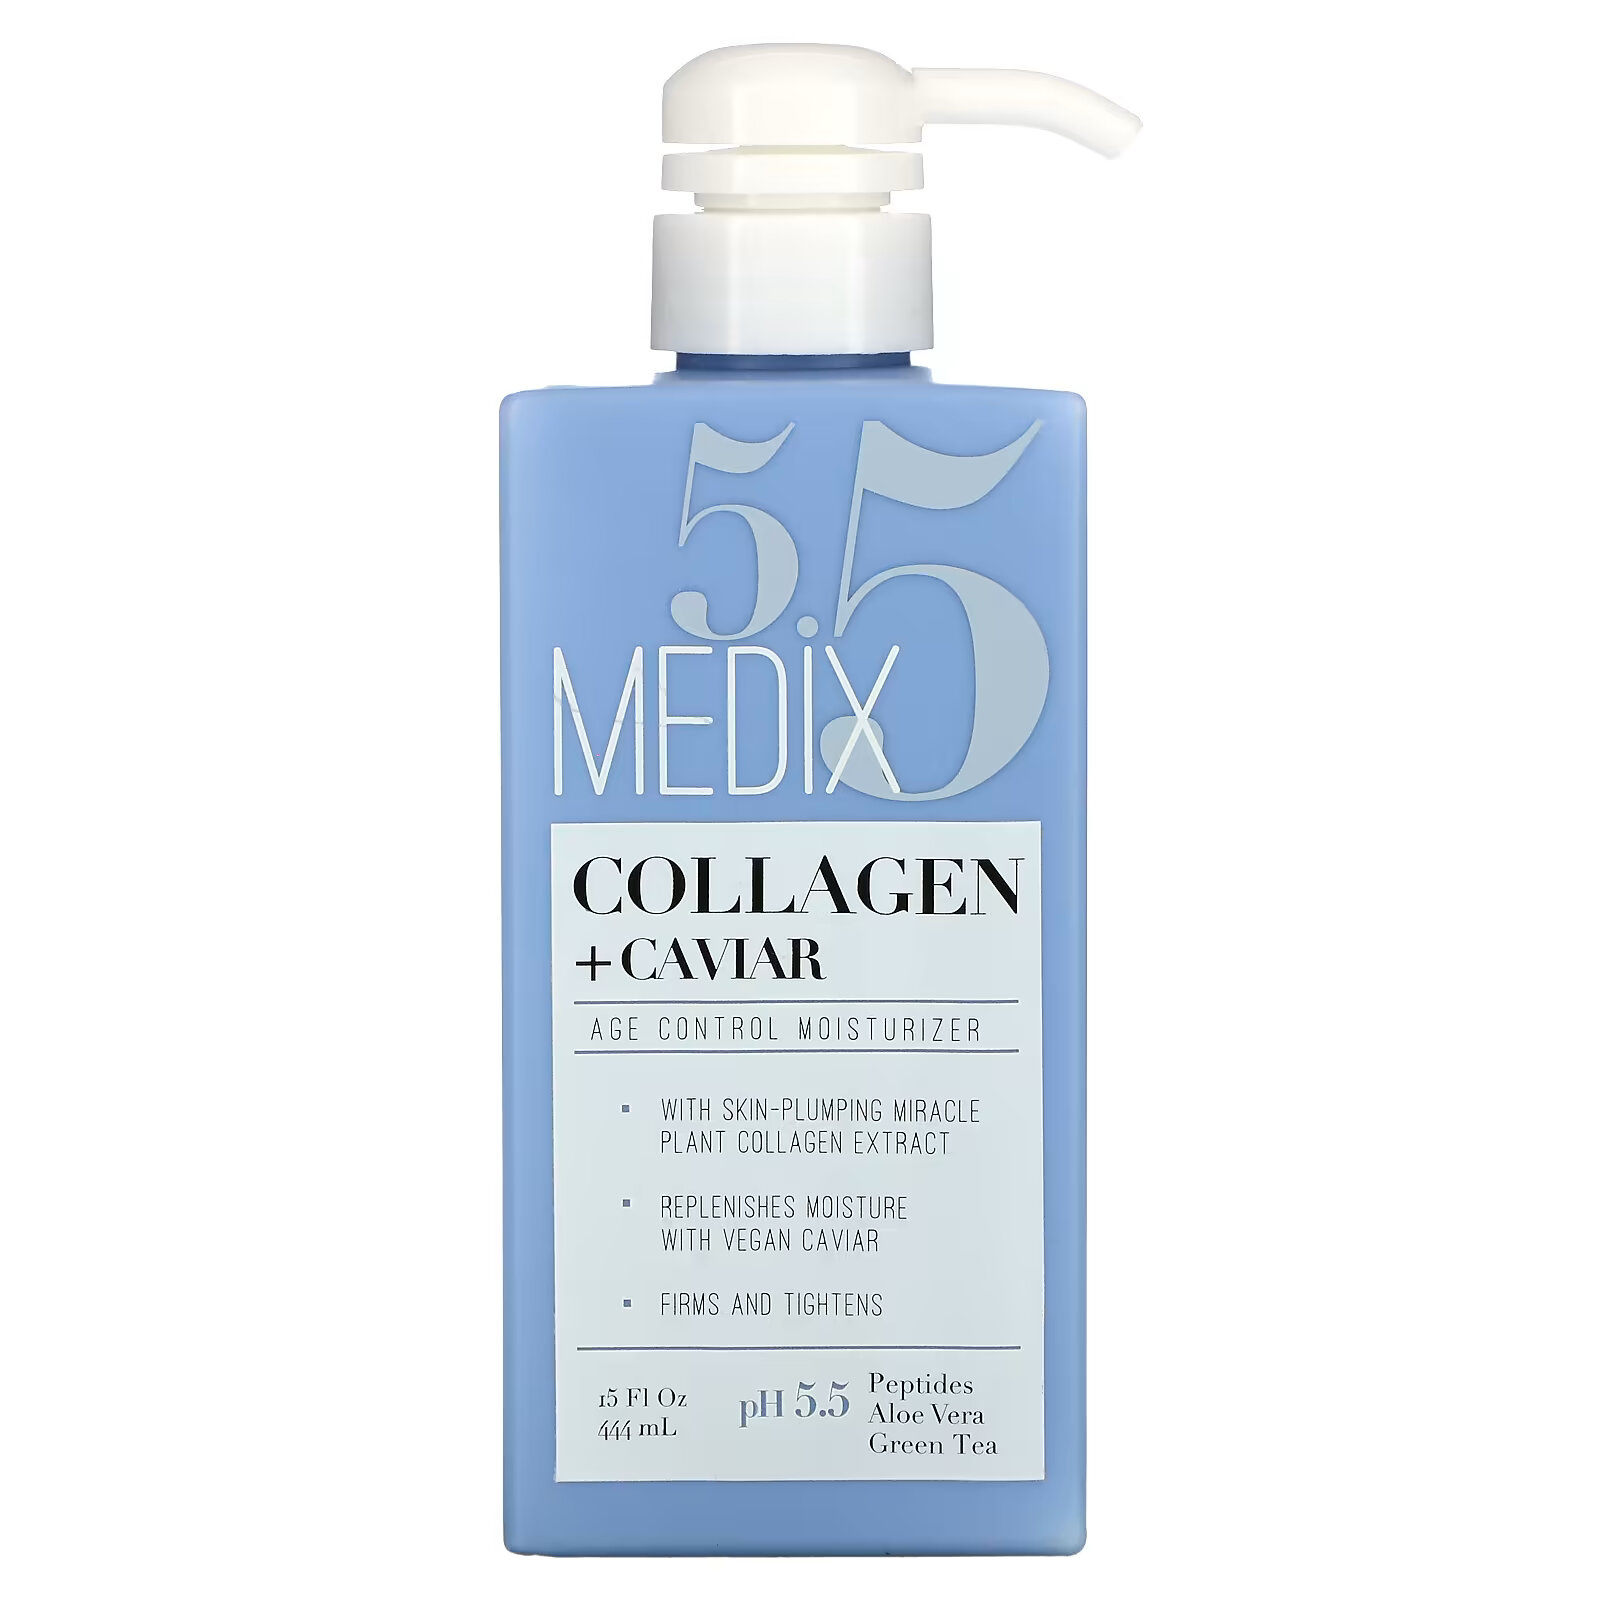 Medix 5.5, Collagen + Caviar, увлажняющее средство для контроля возраста, 444 мл (15 жидк. Унций) medix 5 5 ретинол феруловая кислота средство против провисания 15 жидких унций 444 мл